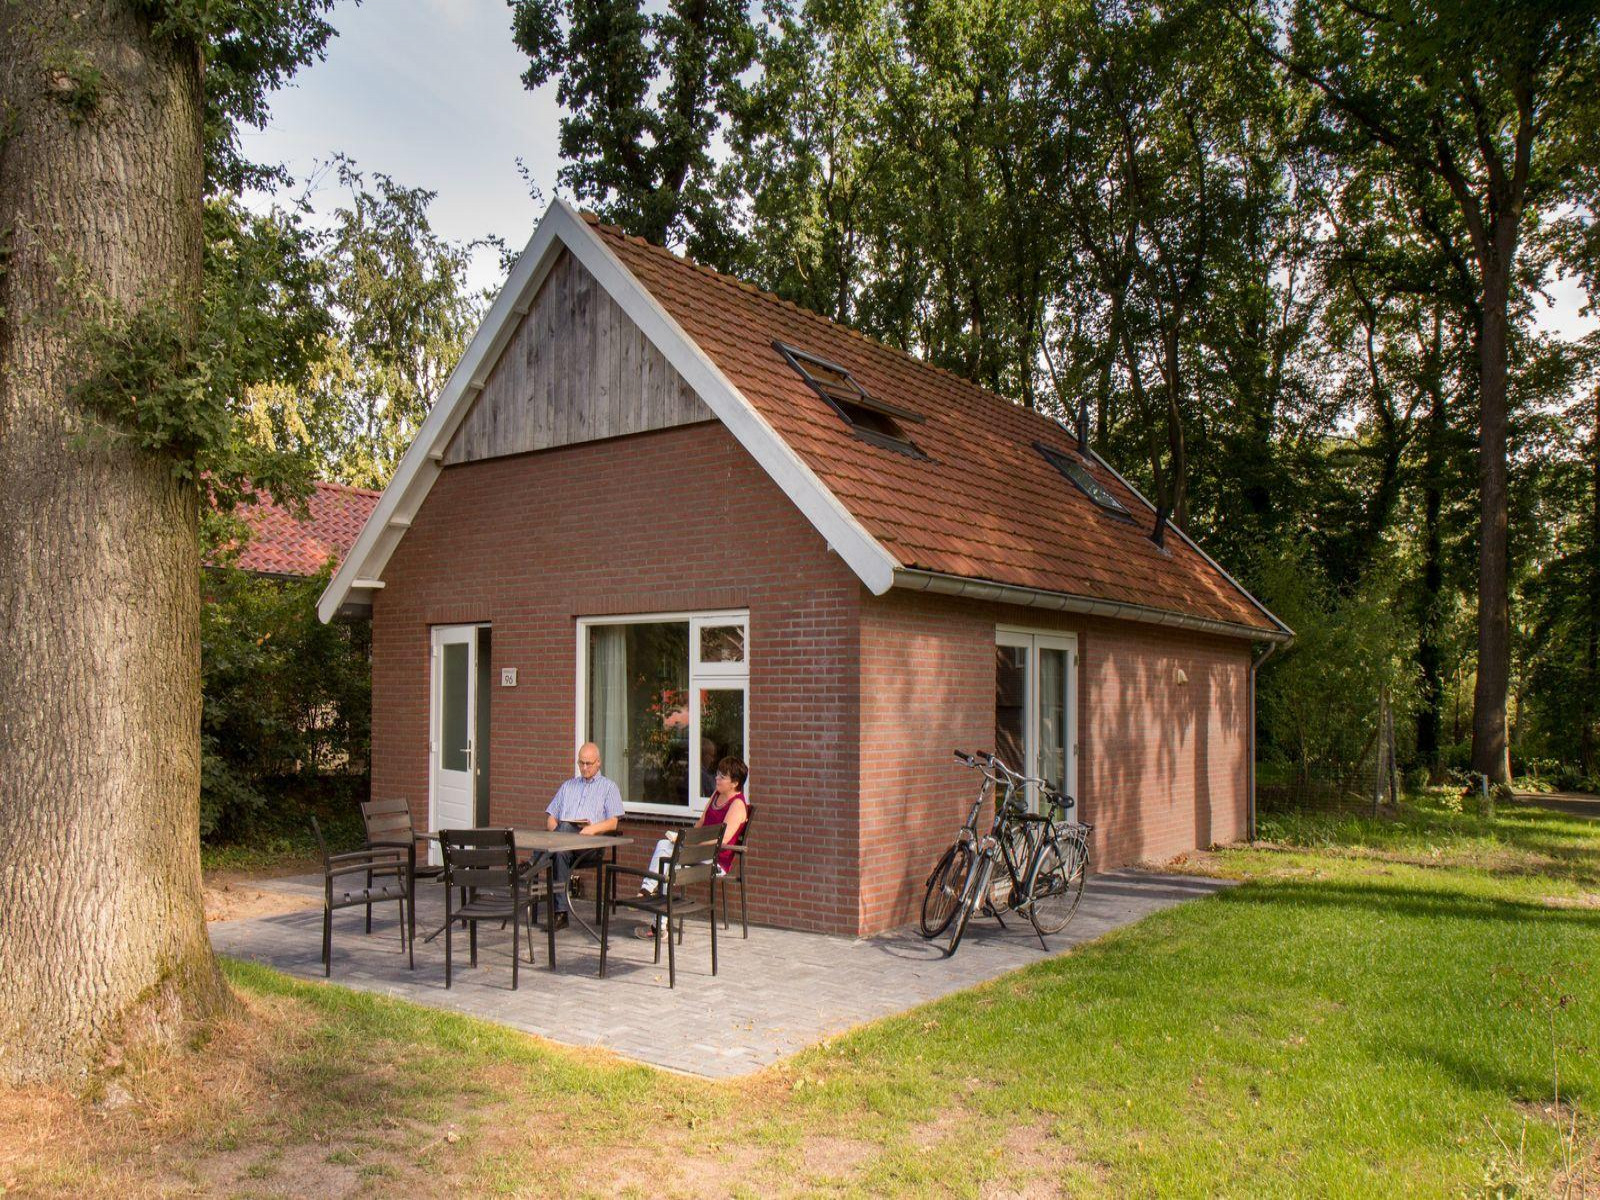 Fraai gelegen 6 persoons vakantiehuis nabij Ootmarsum